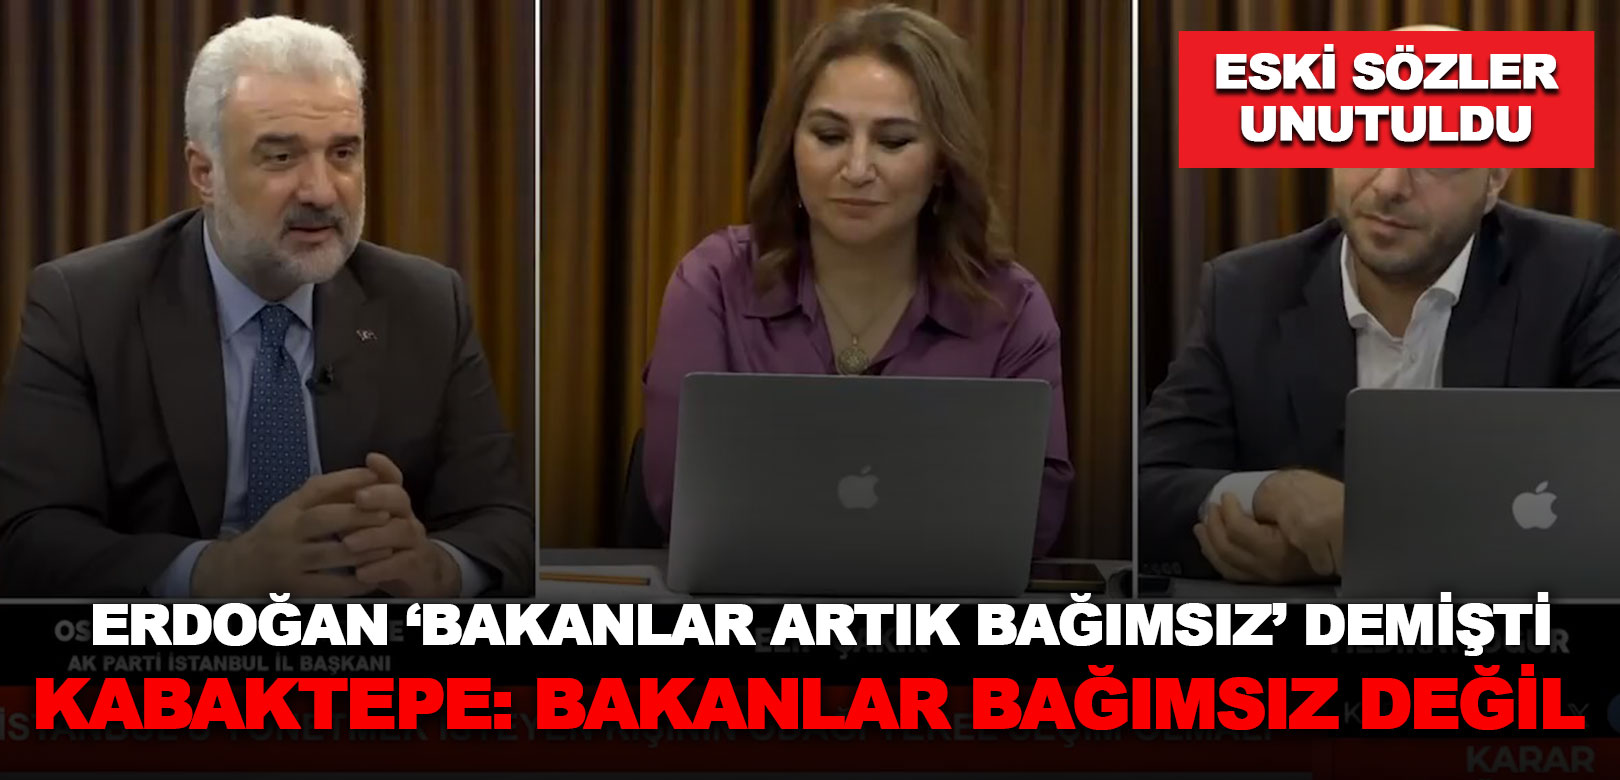 Erdoğan’ın verdiği sözler unutuldu: AKP’li Kabaktepe ‘bakanlar bağımsız değil’ dedi